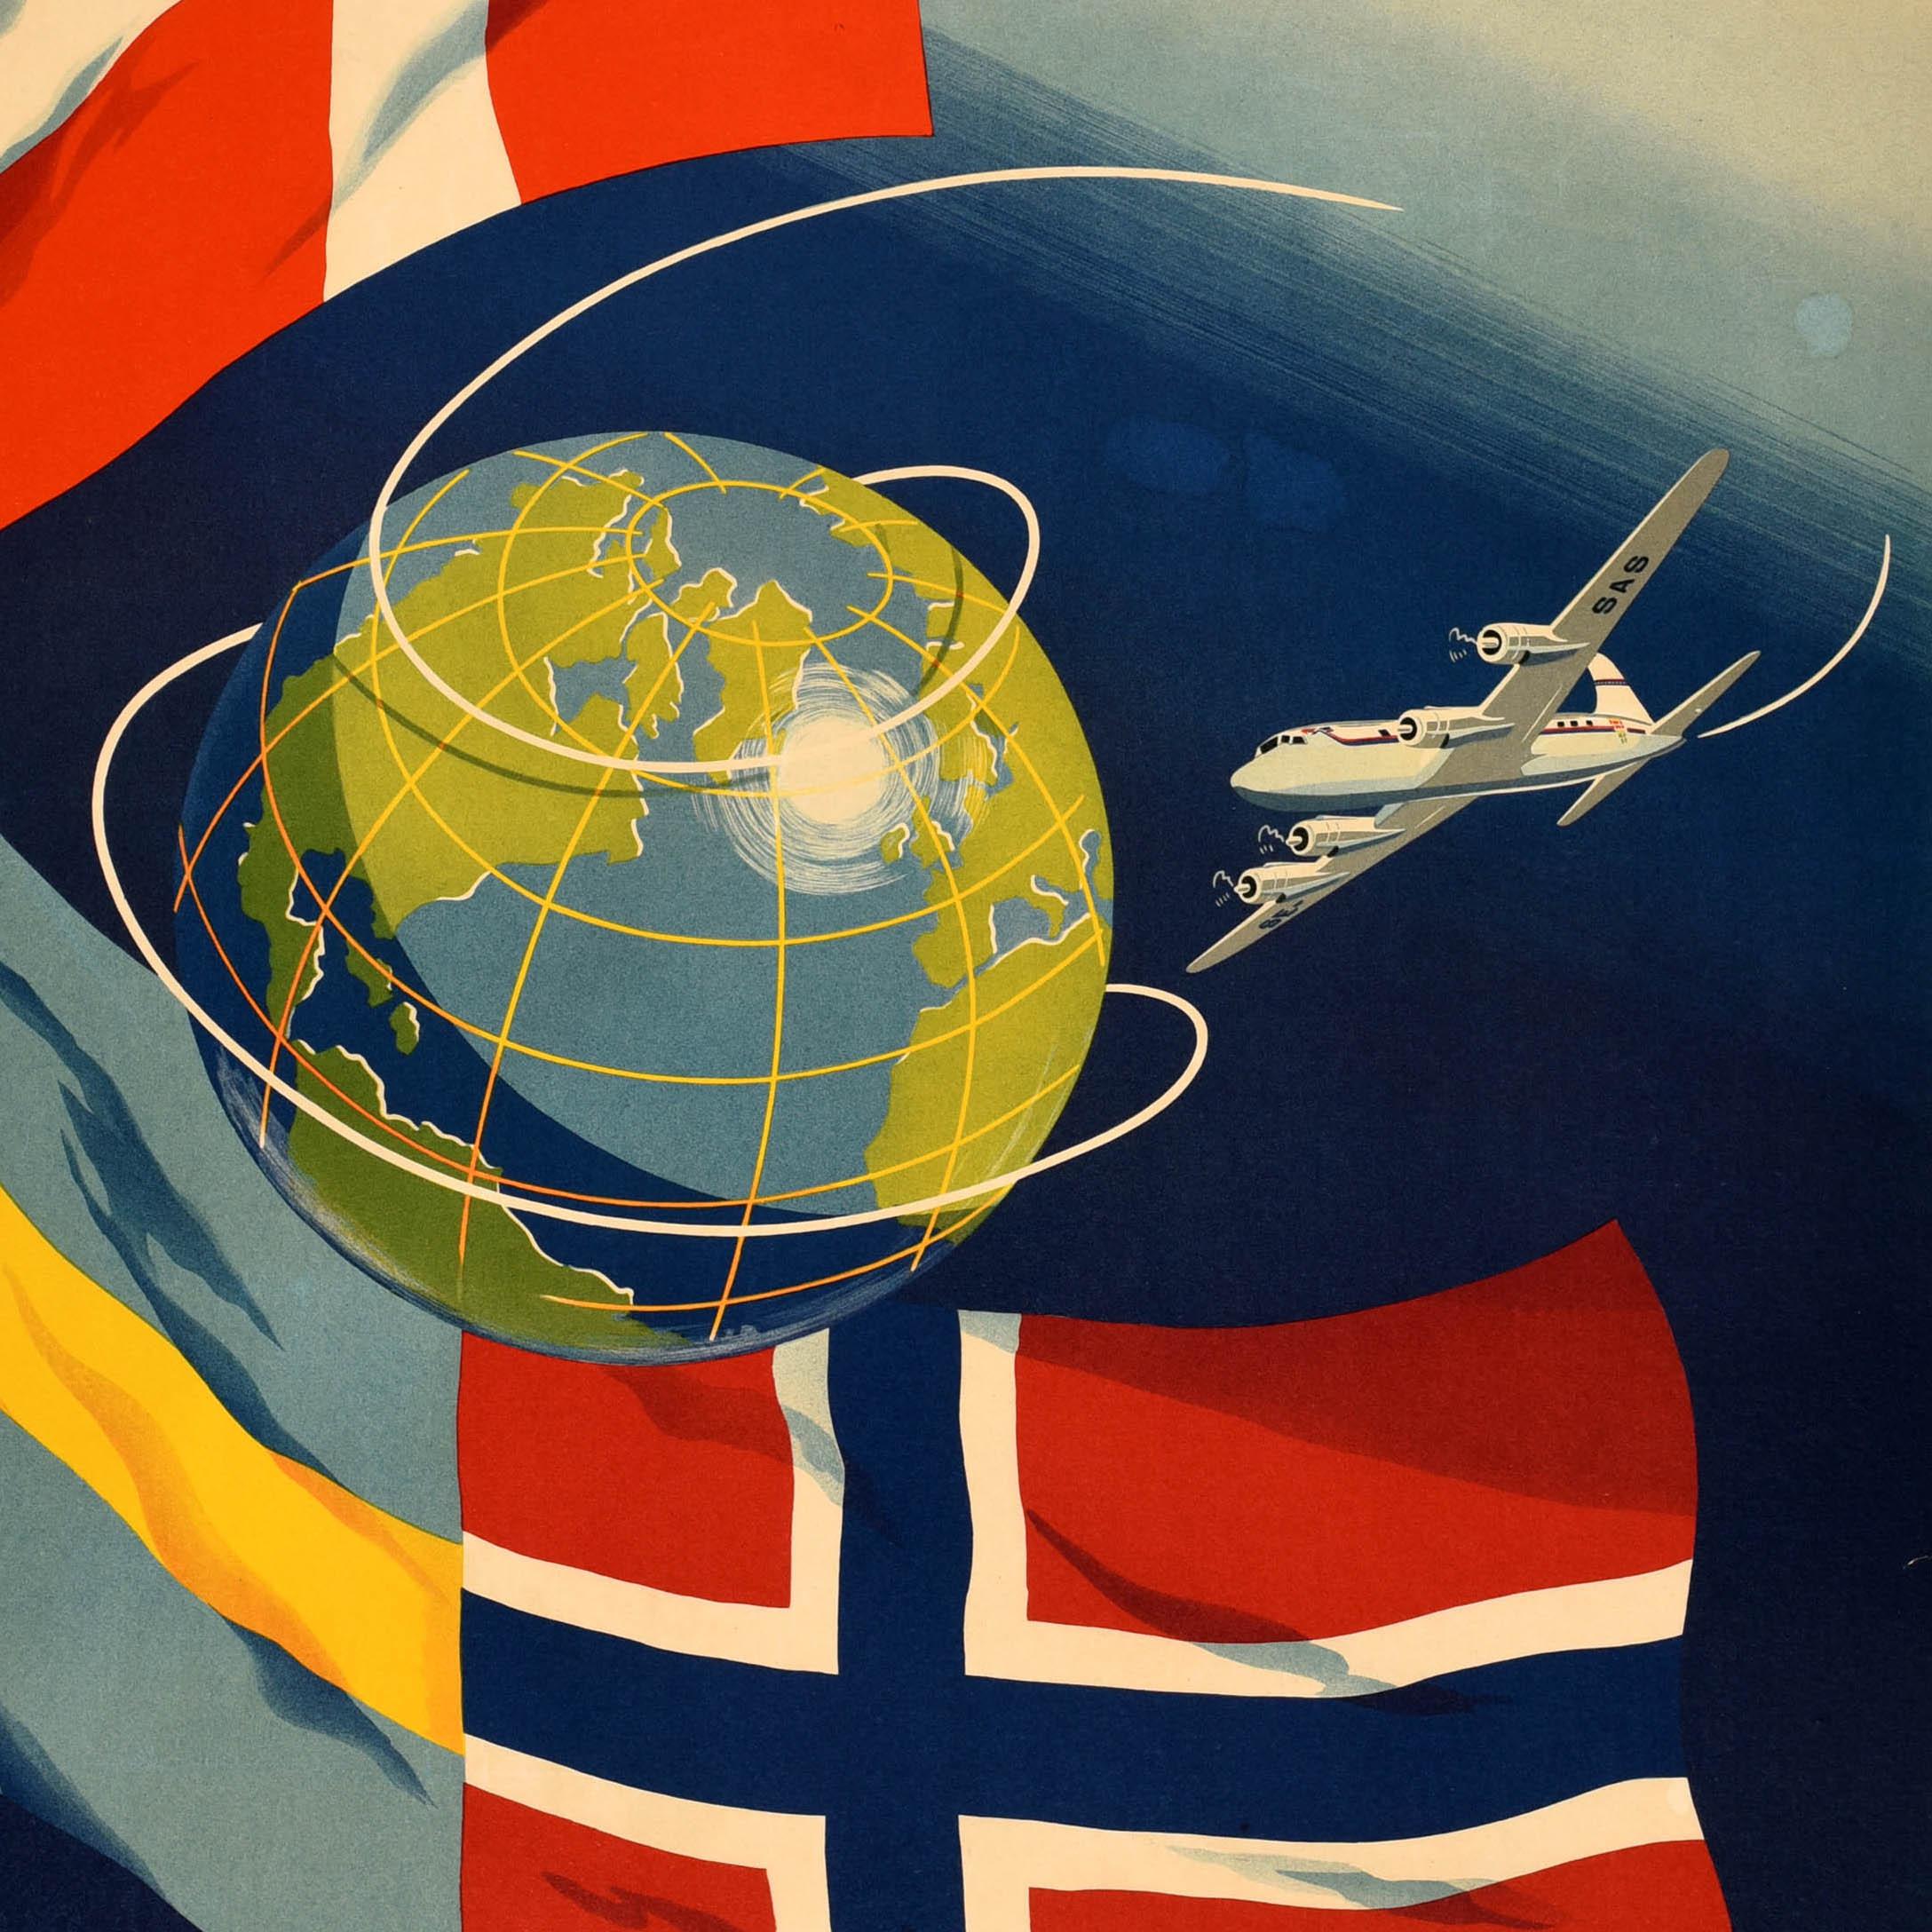 Original Vintage-Reise-Werbeplakat für SAS Scandinavian Airlines System mit einem farbenfrohen Design, das ein Flugzeug zeigt, das um die Welt fliegt, wobei die Flaggen von Schweden, Norwegen und Dänemark vor einem blau-weiß schattierten Hintergrund